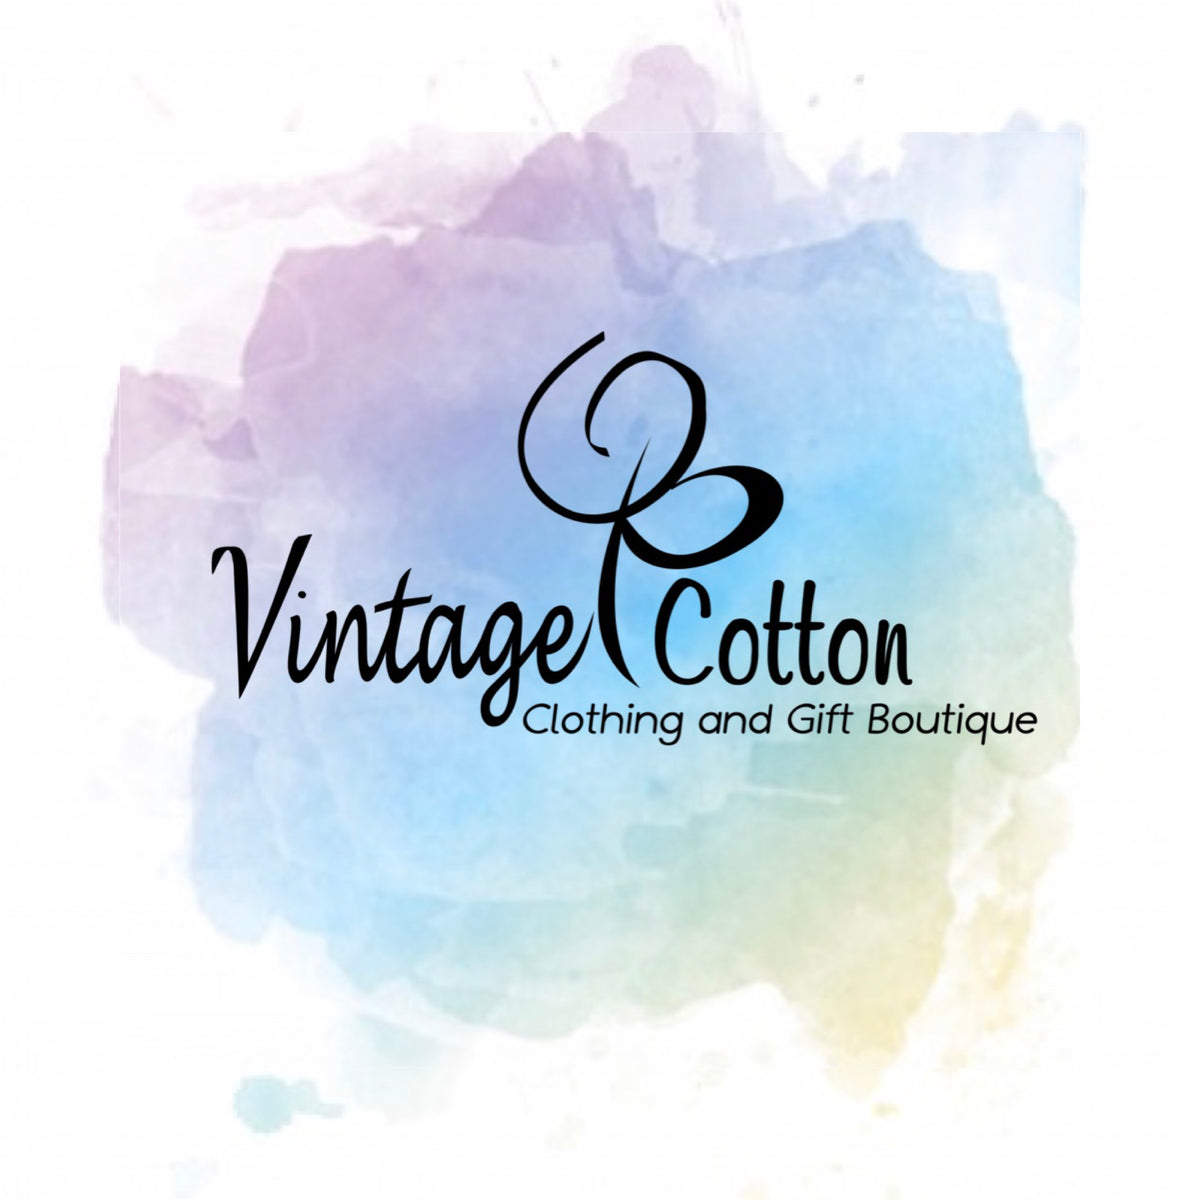 Women's clothing store – Vintage Cotton Boutique